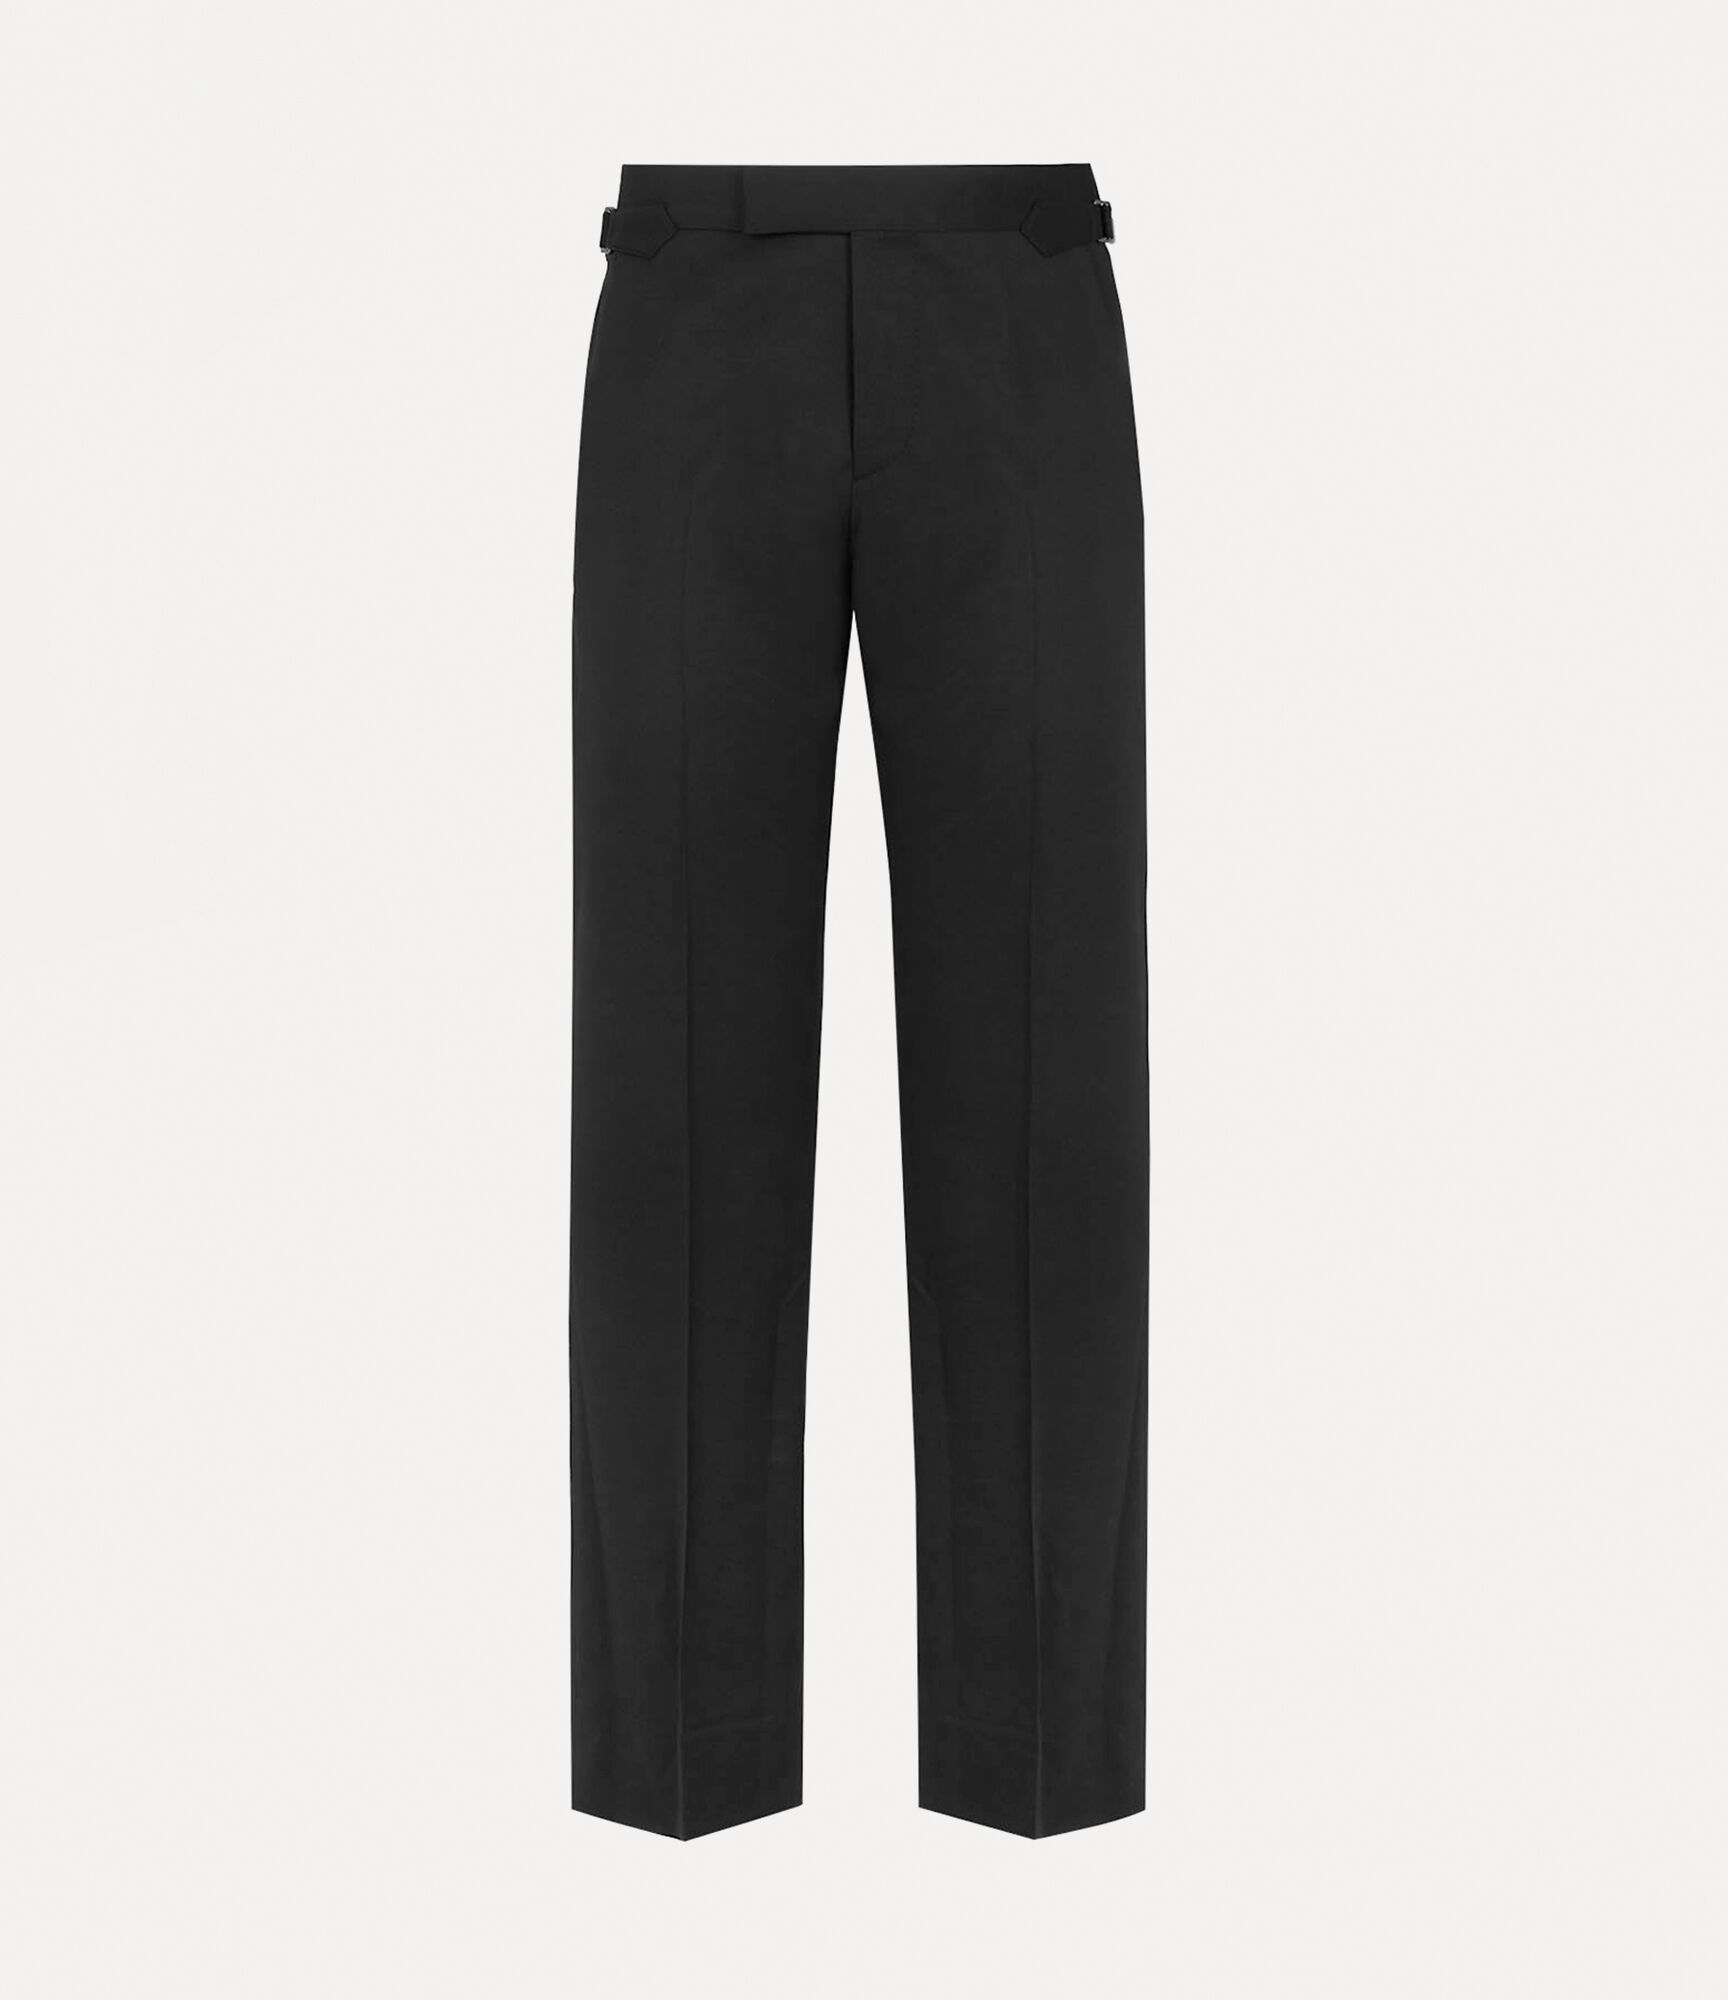 Vivienne Westwood ALIEN TROUSERS - Relaxed fit jeans - black - Zalando.de